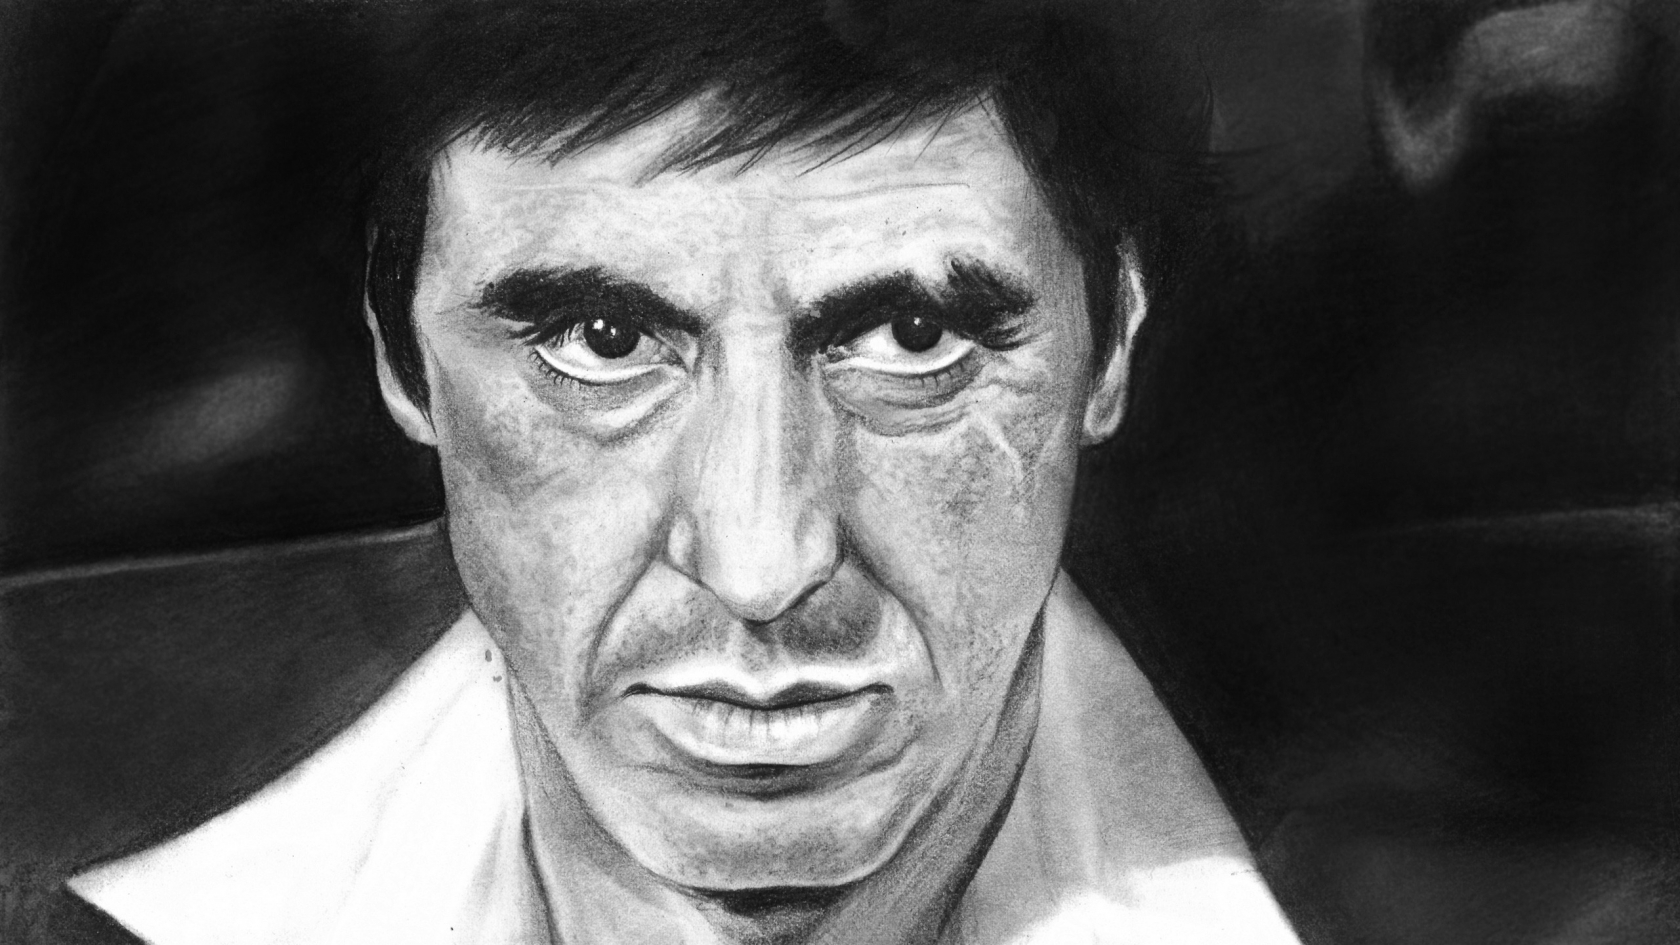 Al Pacino Scarface Fan Art for 1680 x 945 HDTV resolution